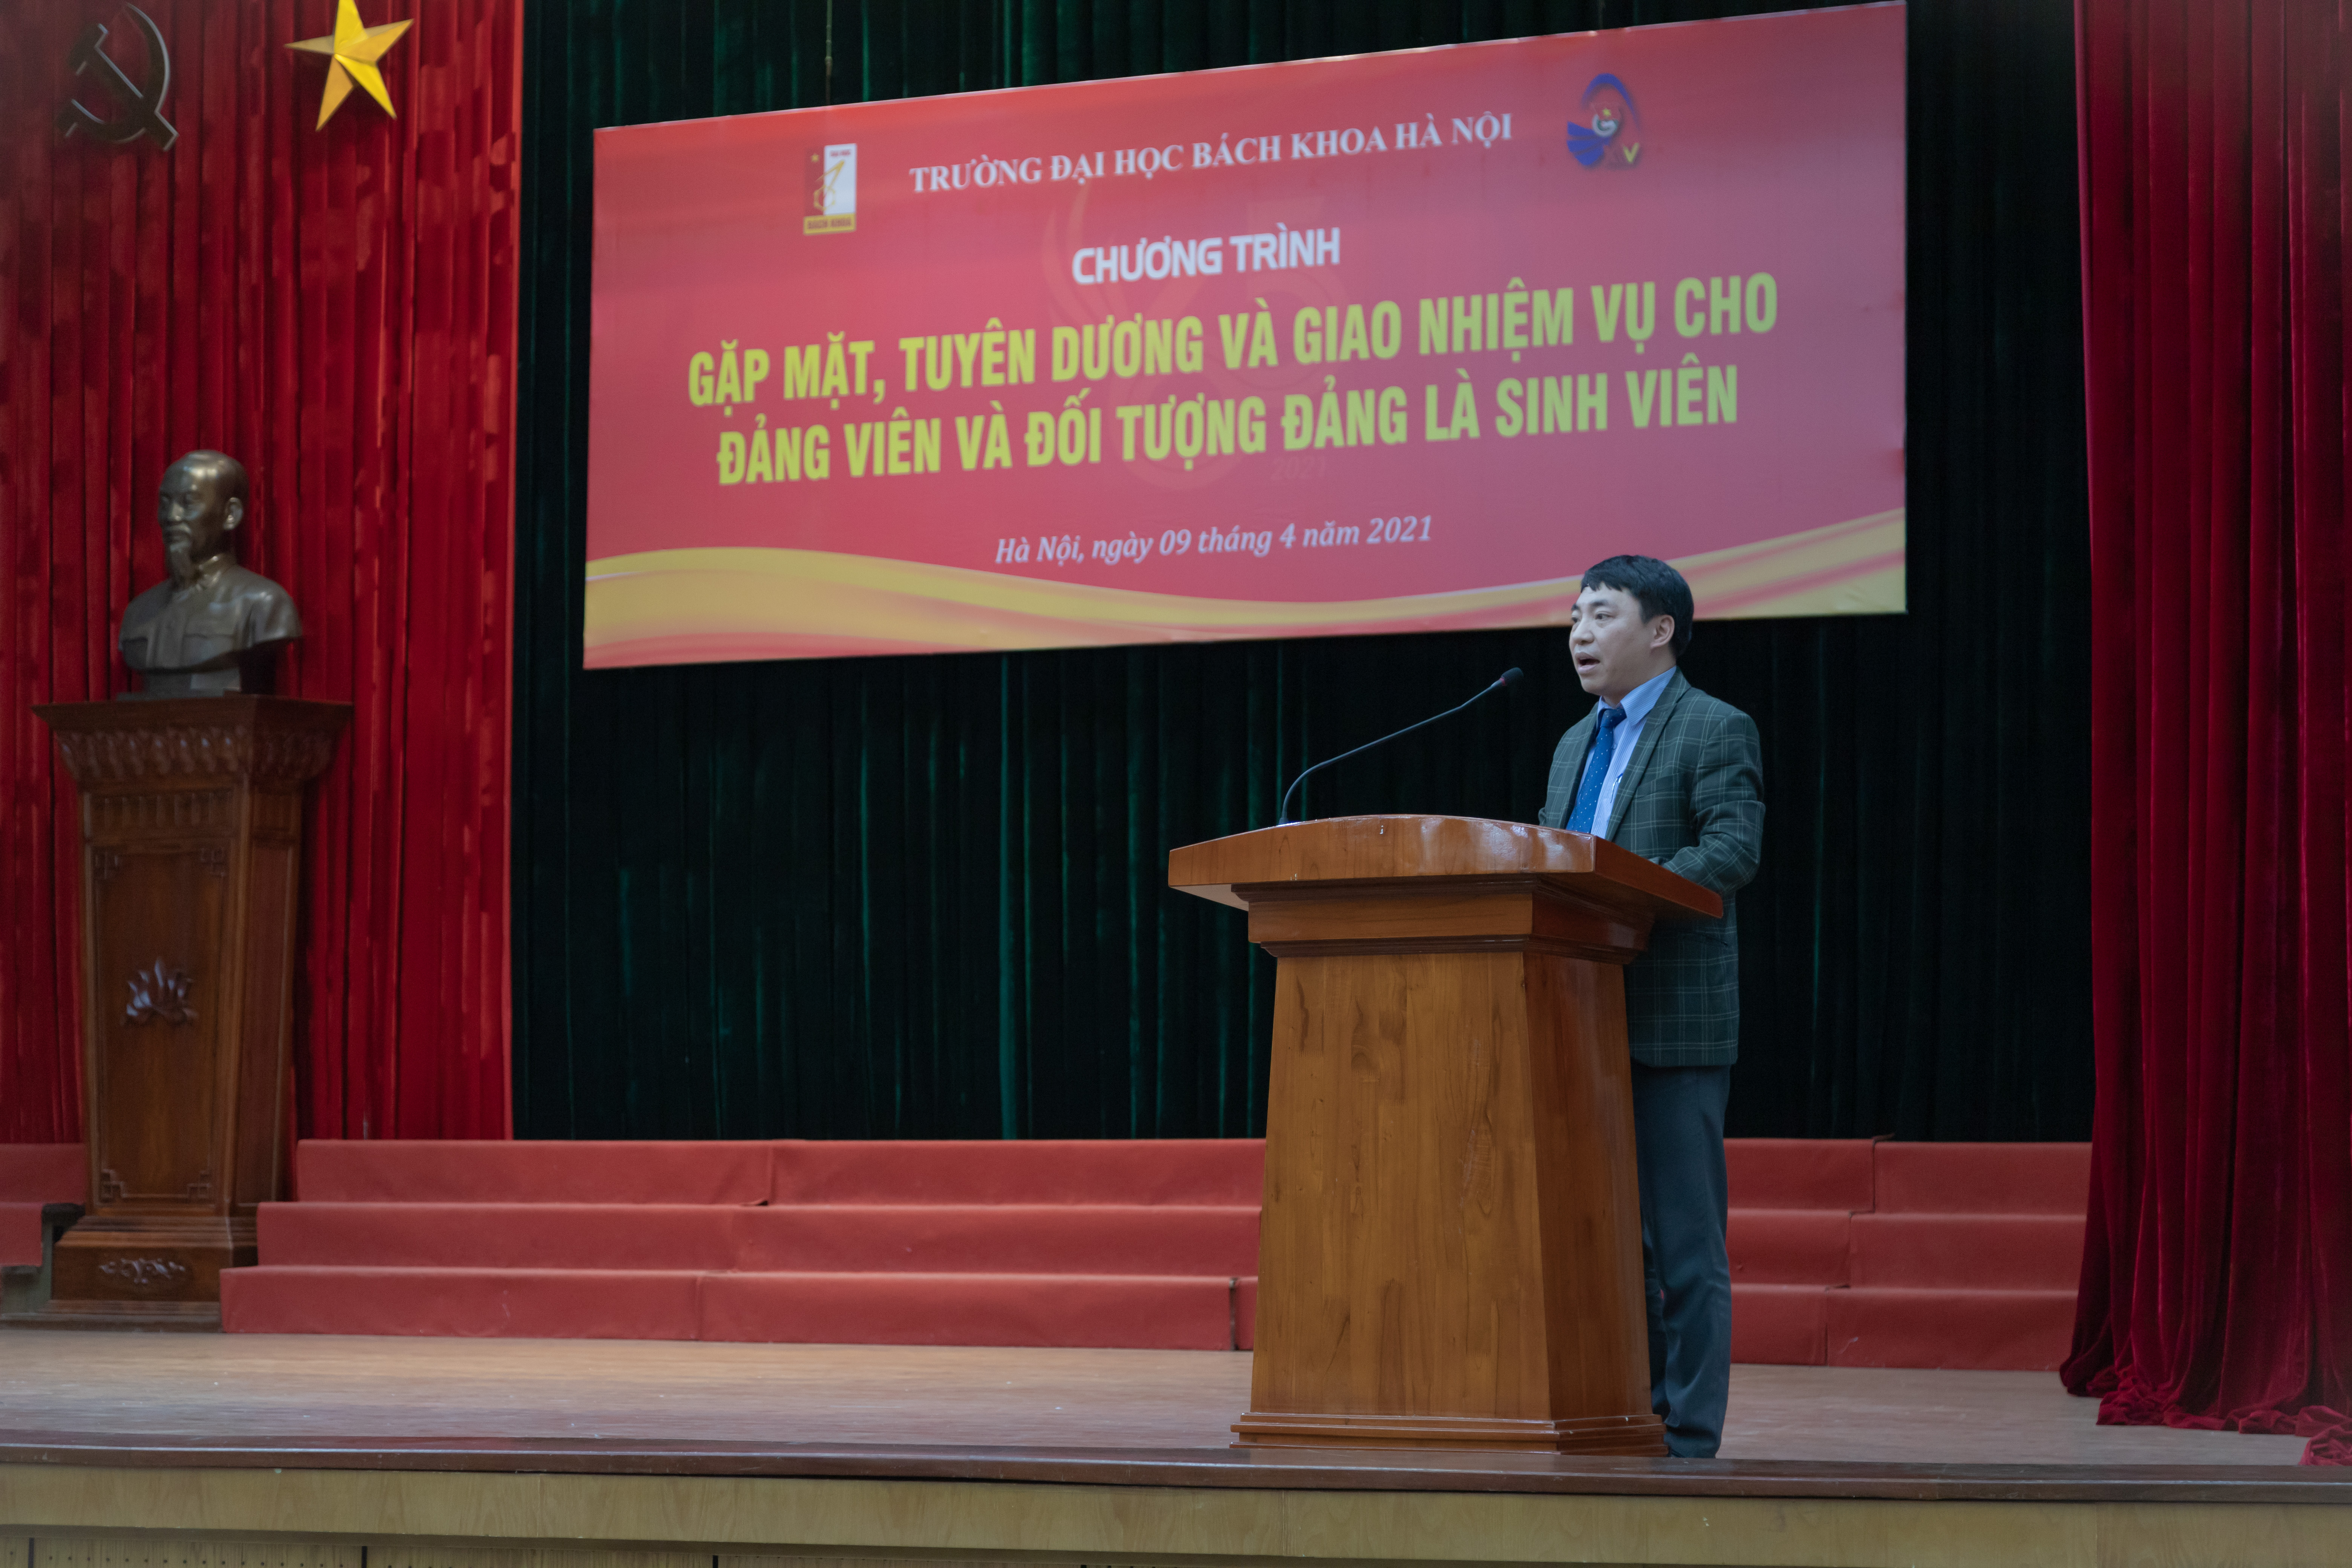 PGS. Trần Ngọc Khiêm - UVTV Đảng uỷ, Phó Hiệu trưởng nhà trường - phát biểu tại buổi lễ